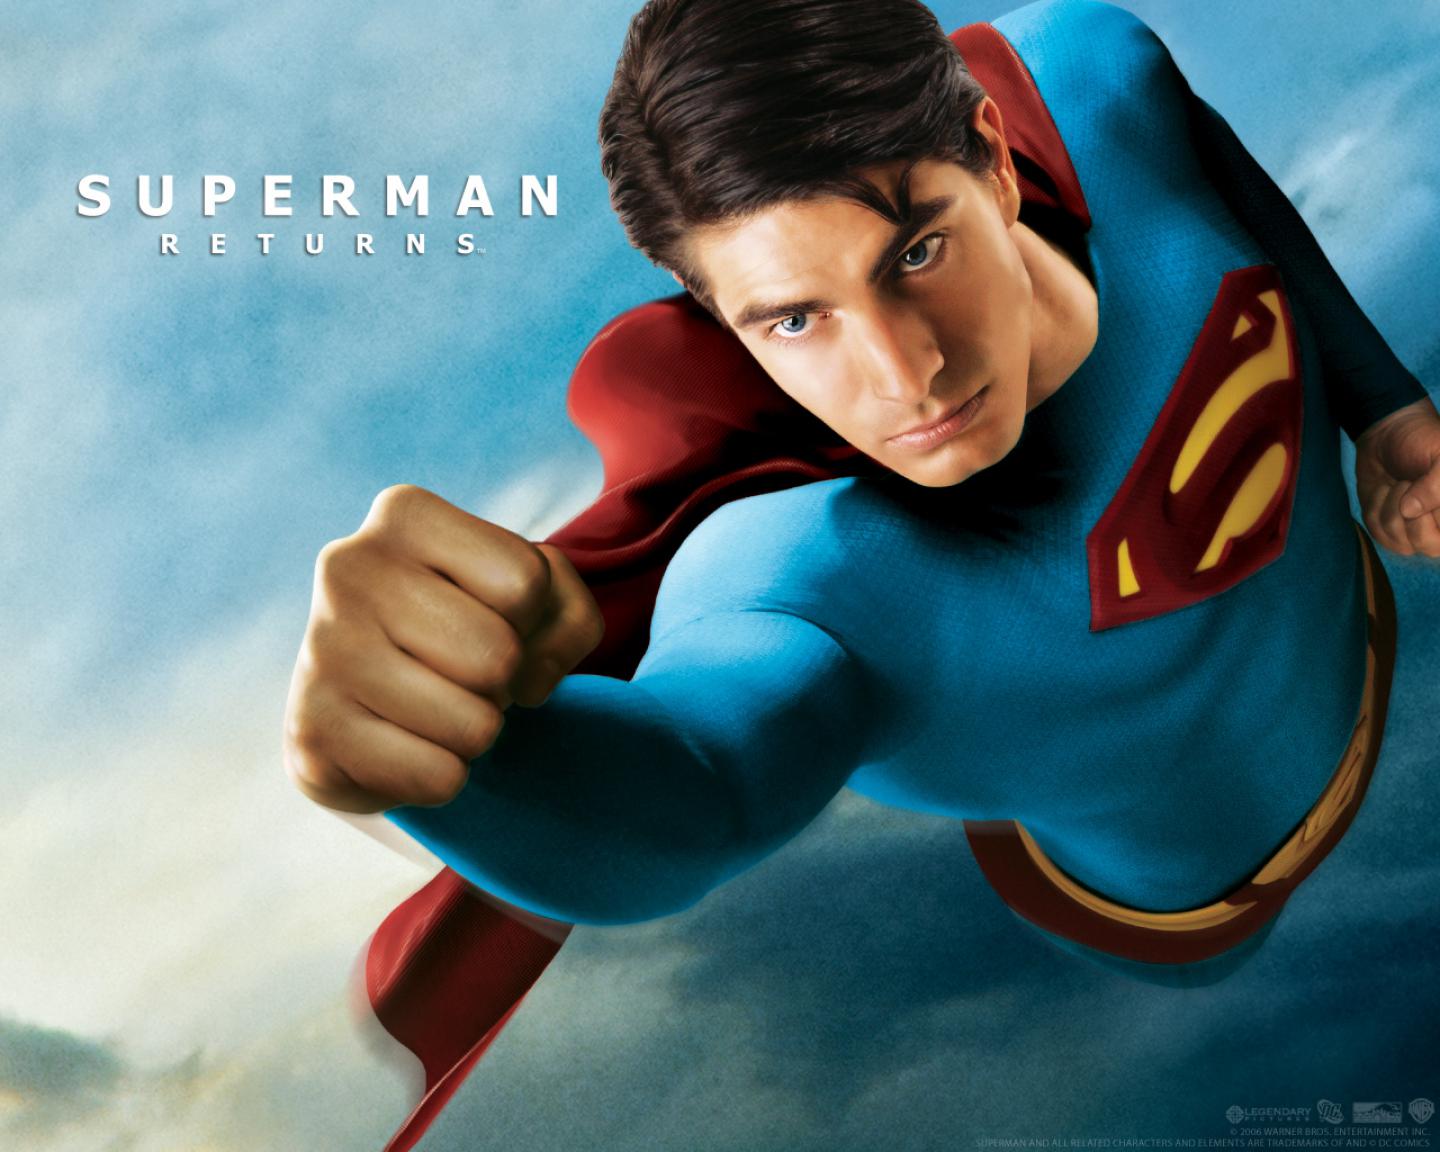 Melhores papéis de parede de Superman: O Retorno para tela do telefone